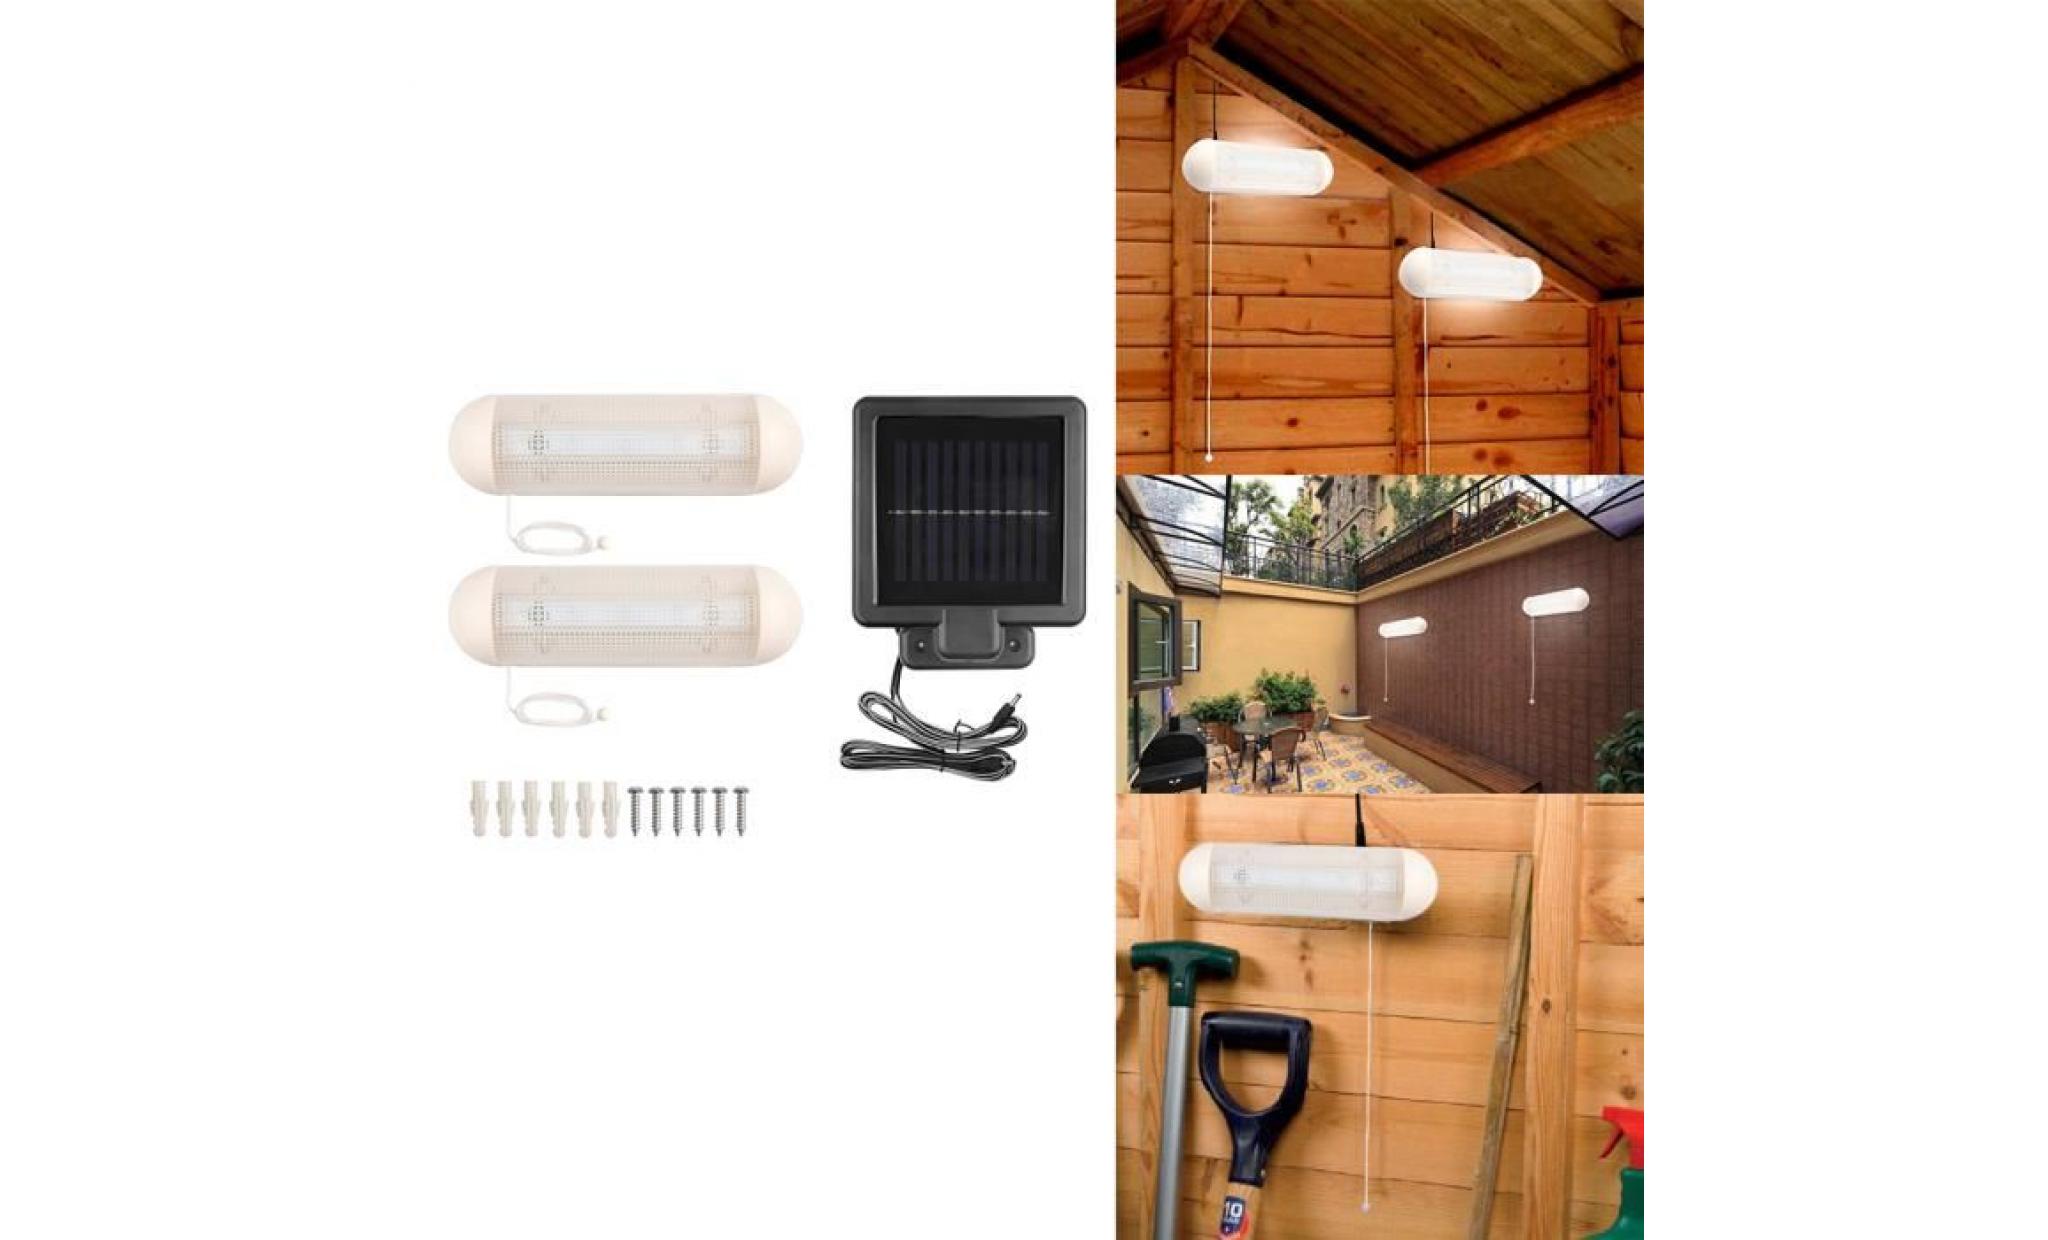 1 à 2 pcs solaire 10 w 5led mur lumière blanc rechargeable avec pull cordon interrupteur pour garage écurie stable jardin cour